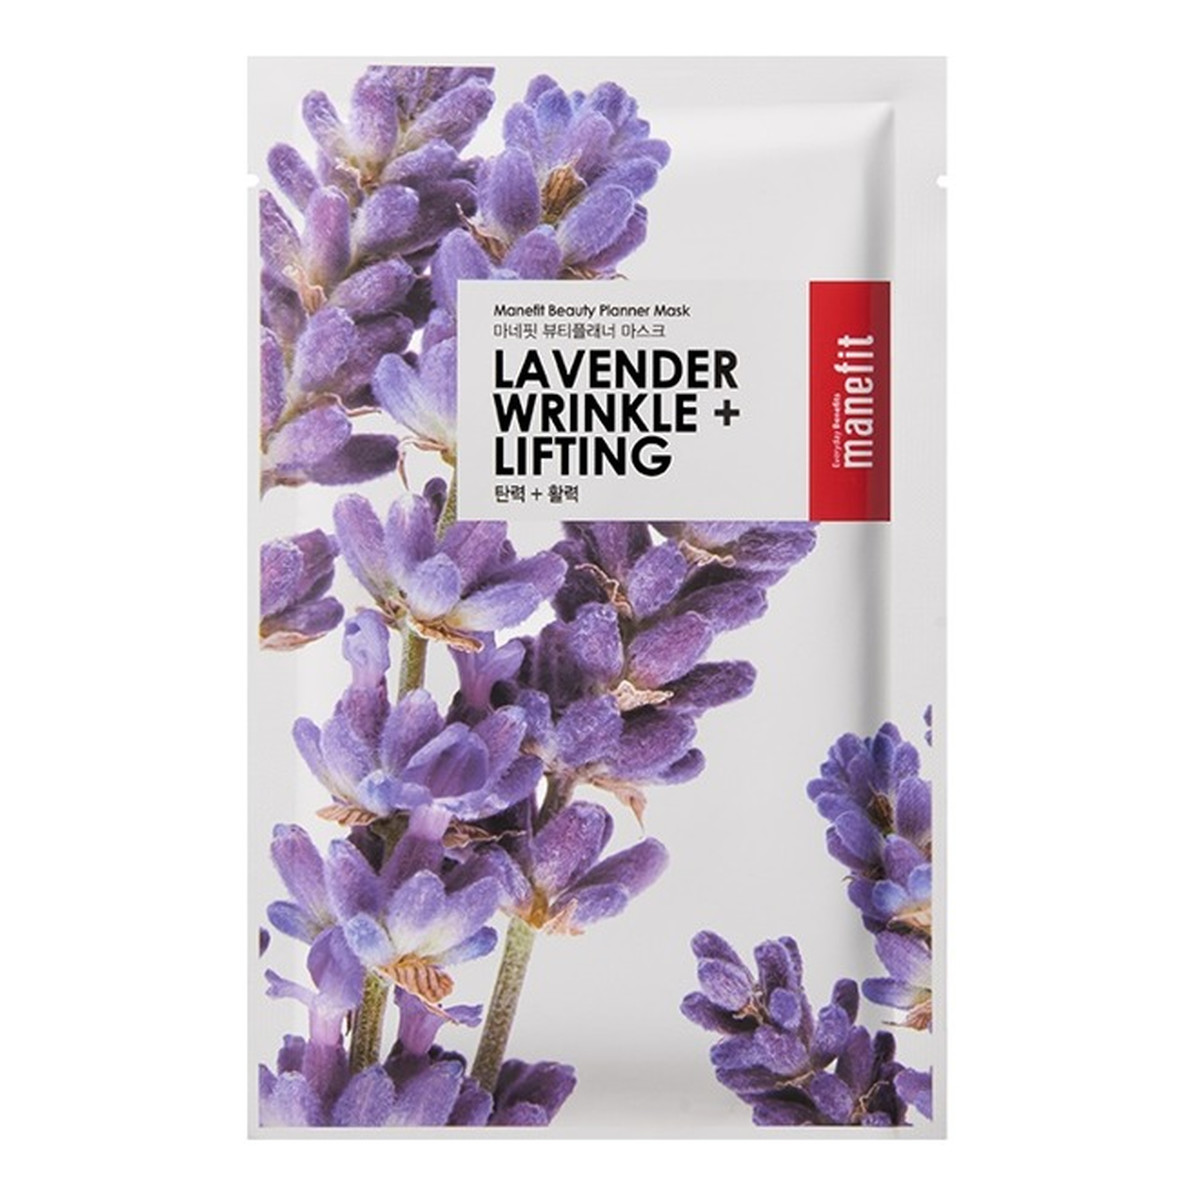 Manefit Lavender Wrinkle + Lifting delikatna maseczka w płachcie dla skóry matowej i pozbawionej blasku 25g